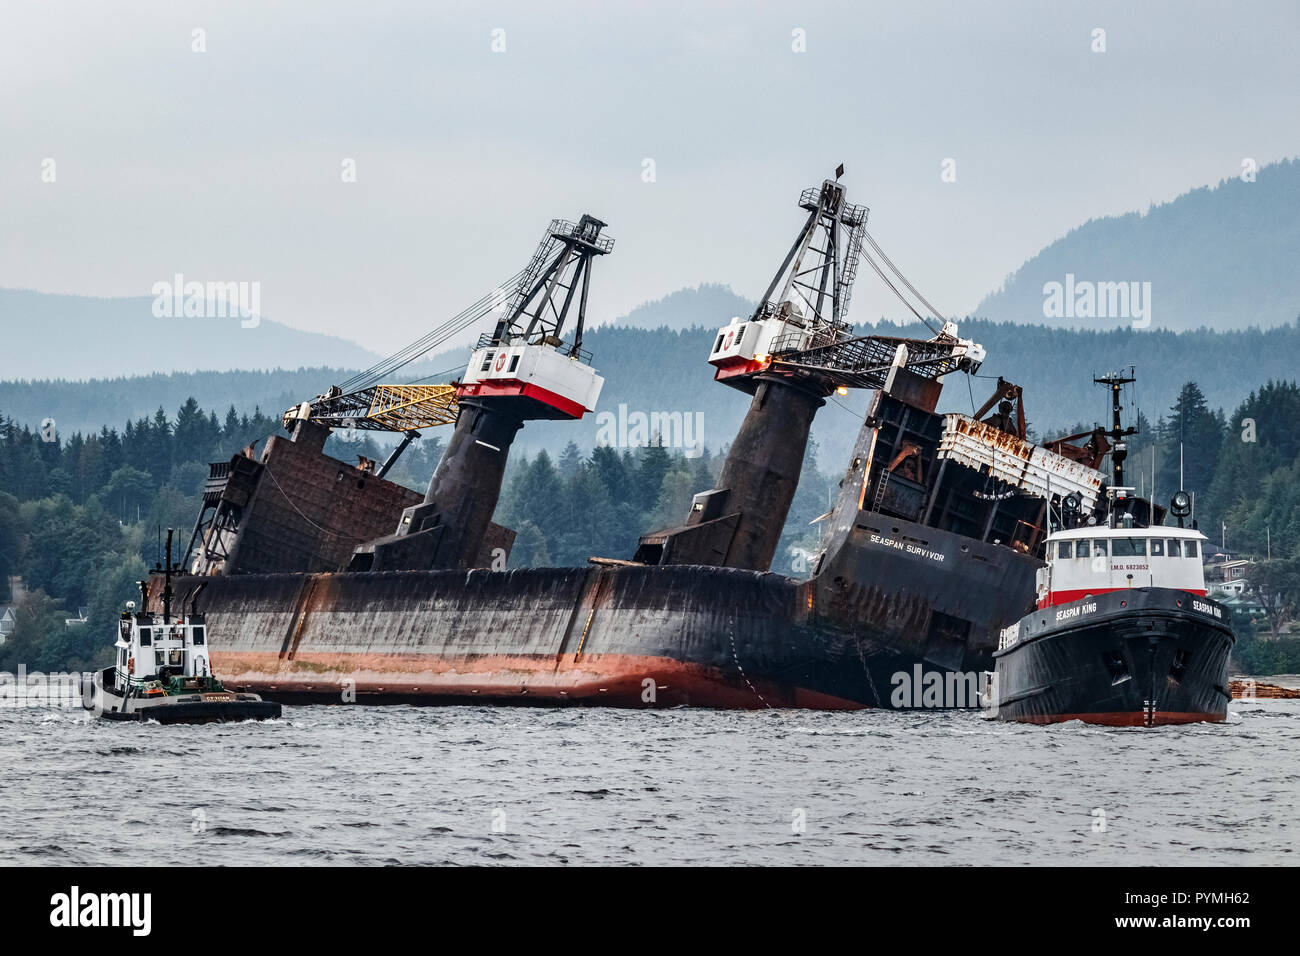 Après le déversement de la charge, l'auto-dumping log barge Seaspan survivant, encore plus nantis, est tenu par les remorqueurs Seaspan C.T King et Titan. Banque D'Images